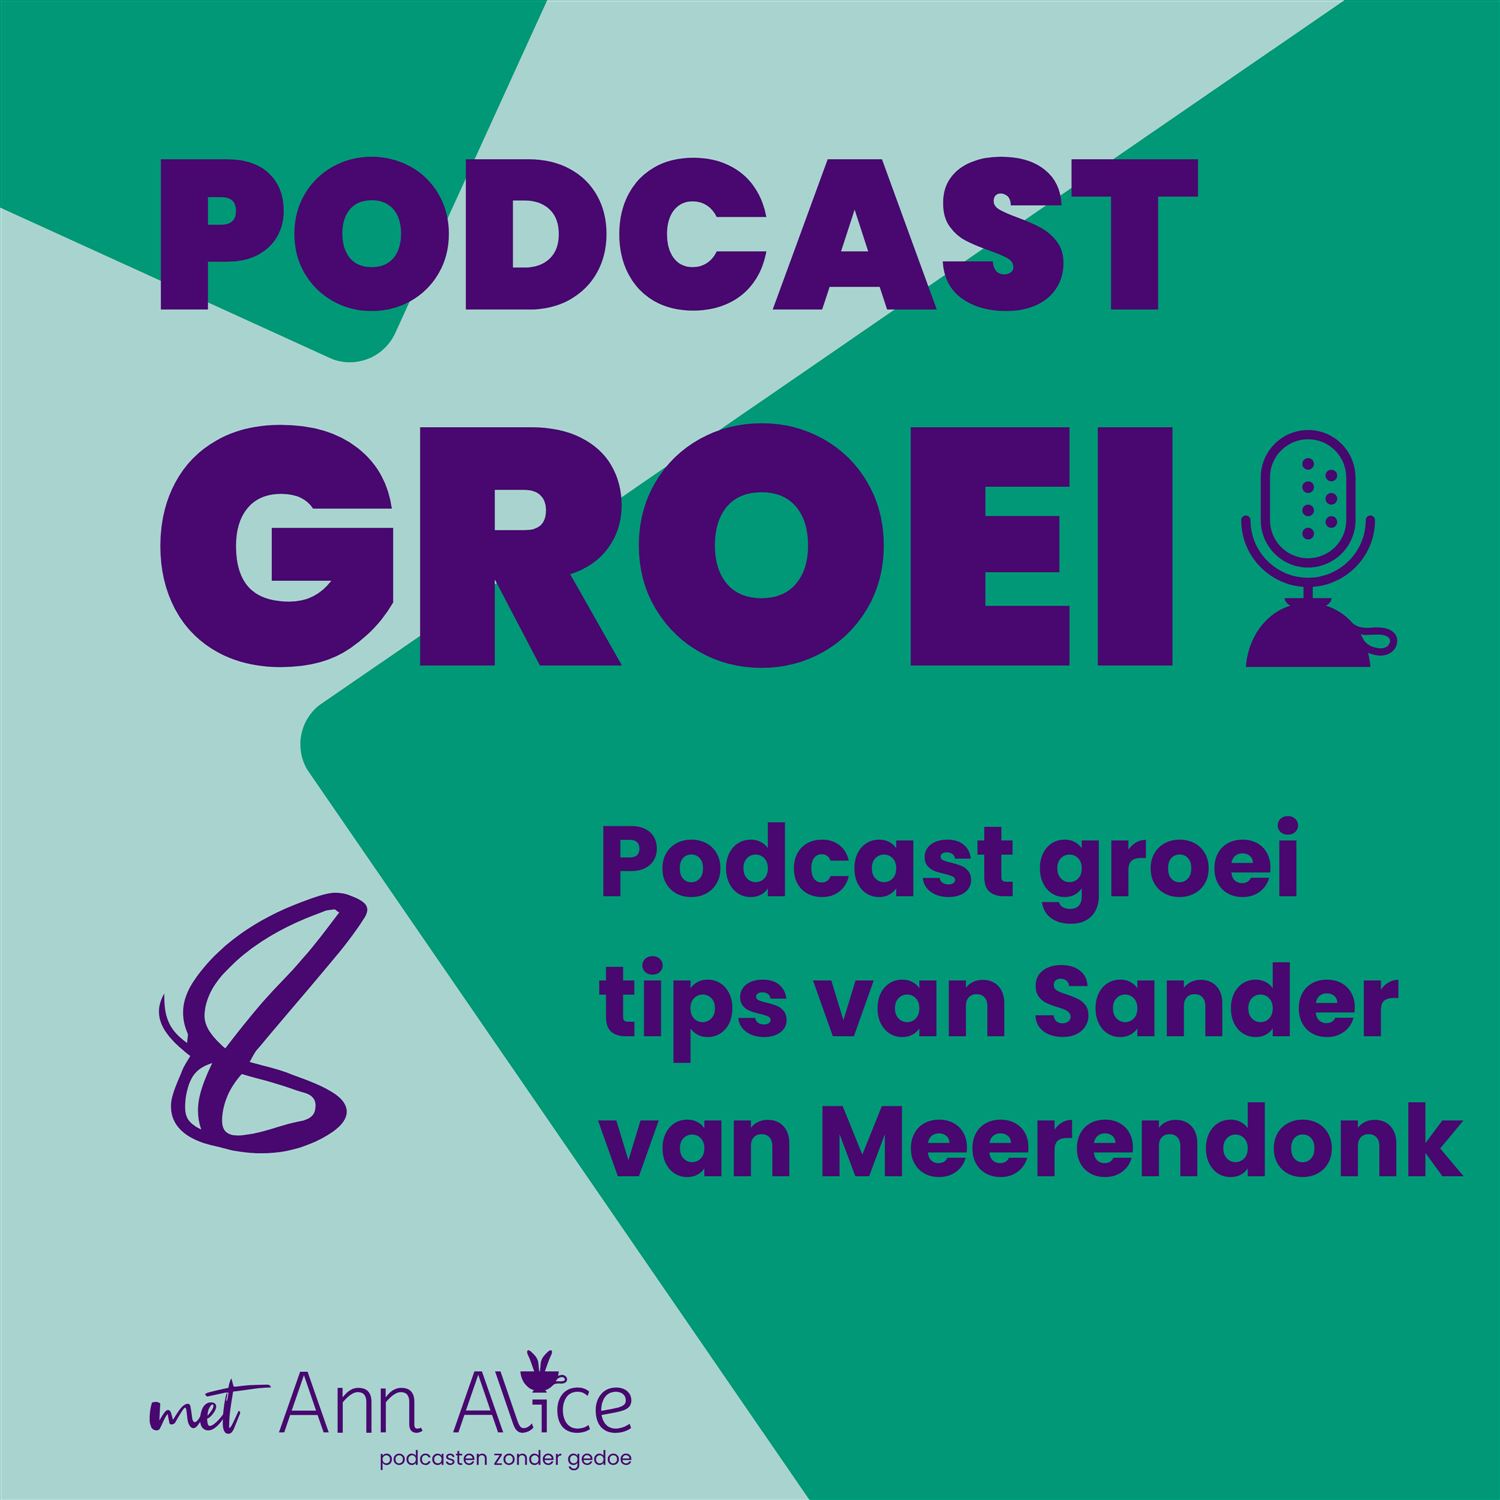 8. Podcast groei tips van Sander van Meerendonk